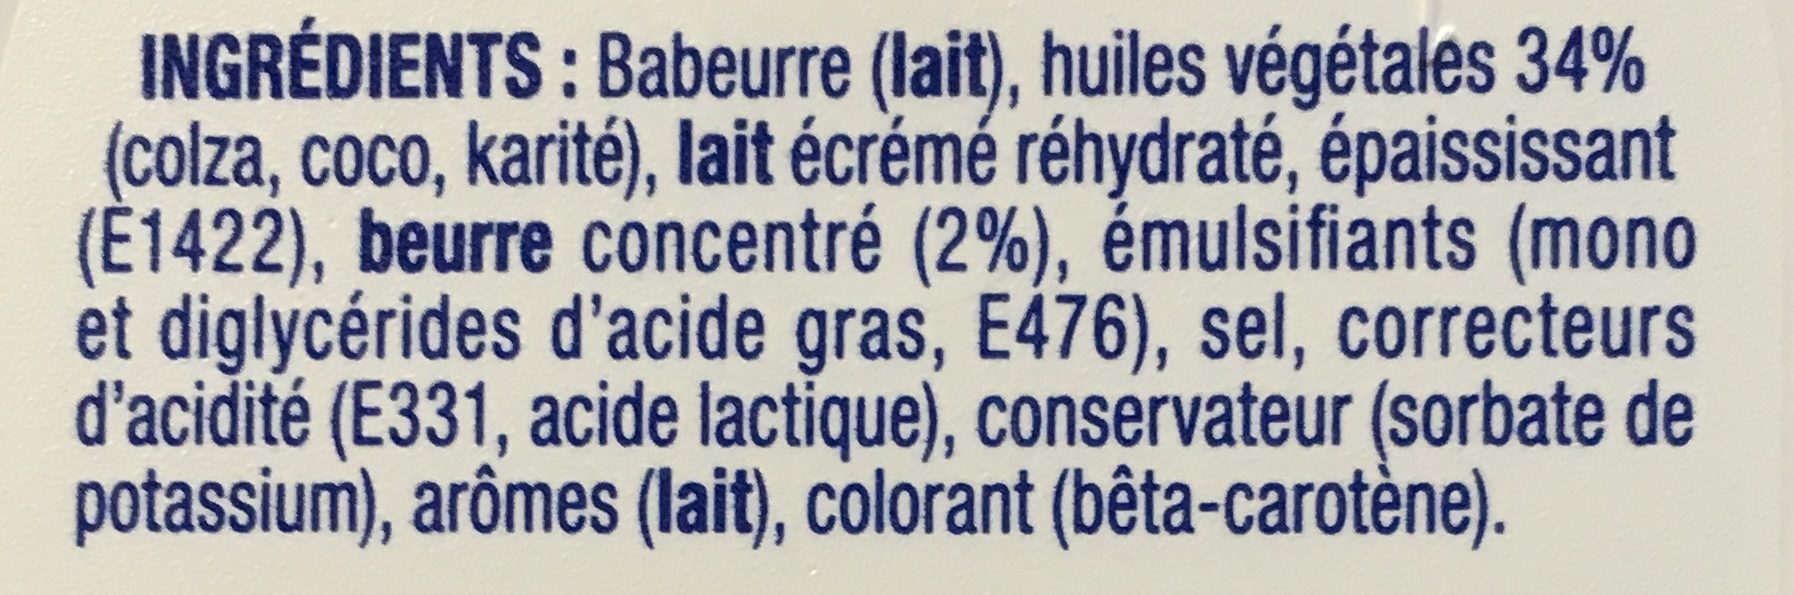 St Hubert 41 Doux - Ingredients - fr